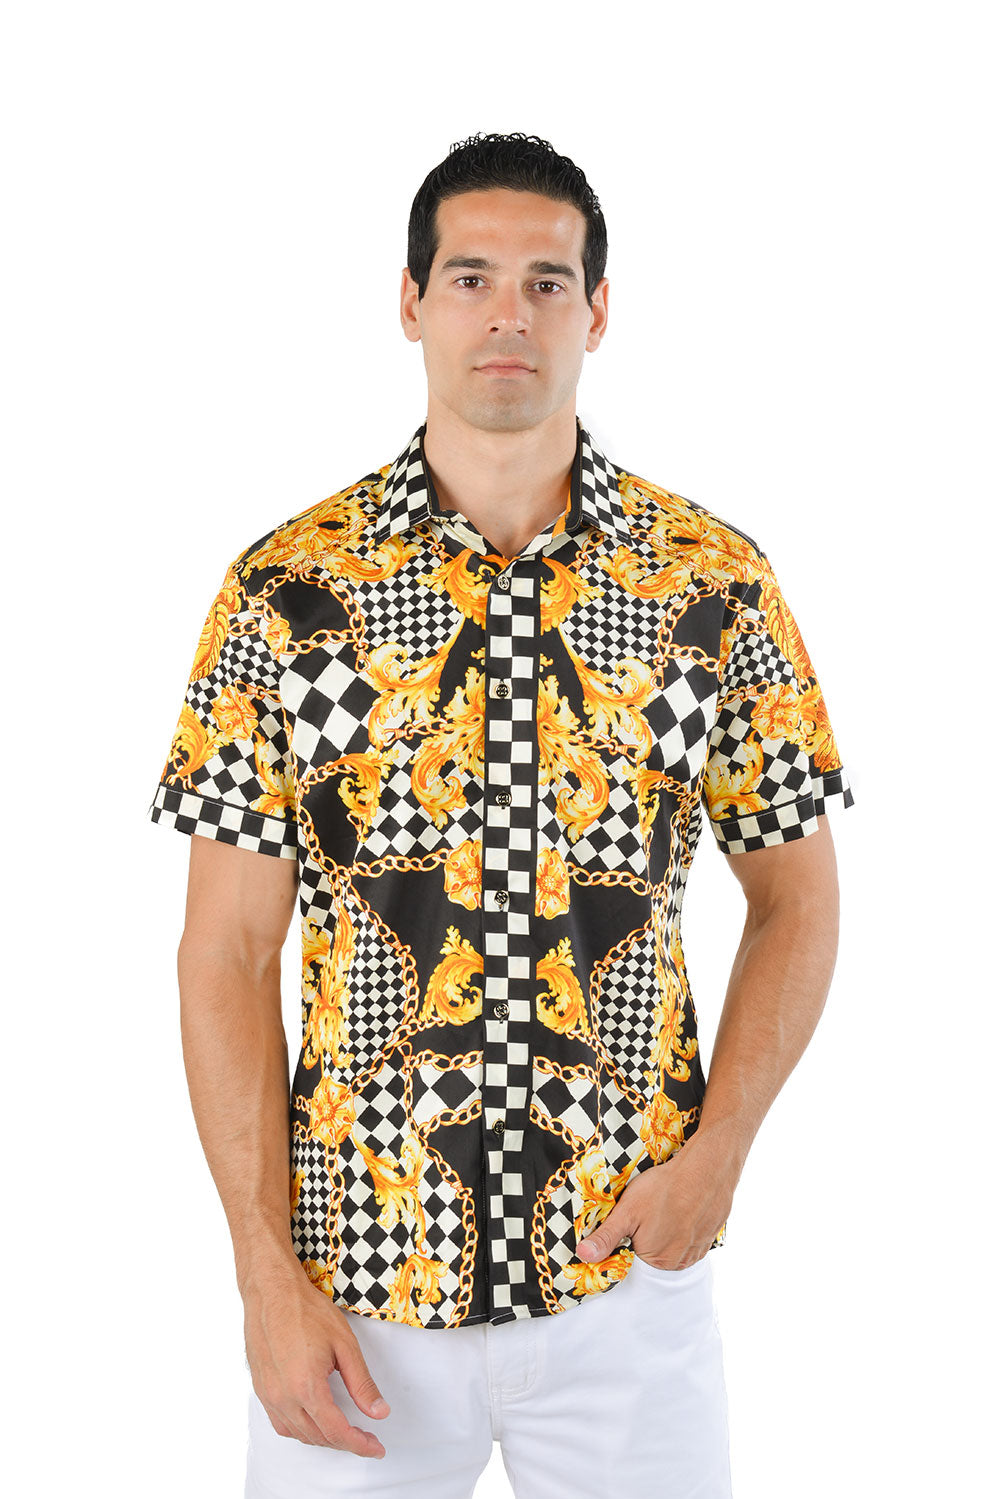 BARABAS Men's checkered chain graphic short sleeve shirt SS02 yello